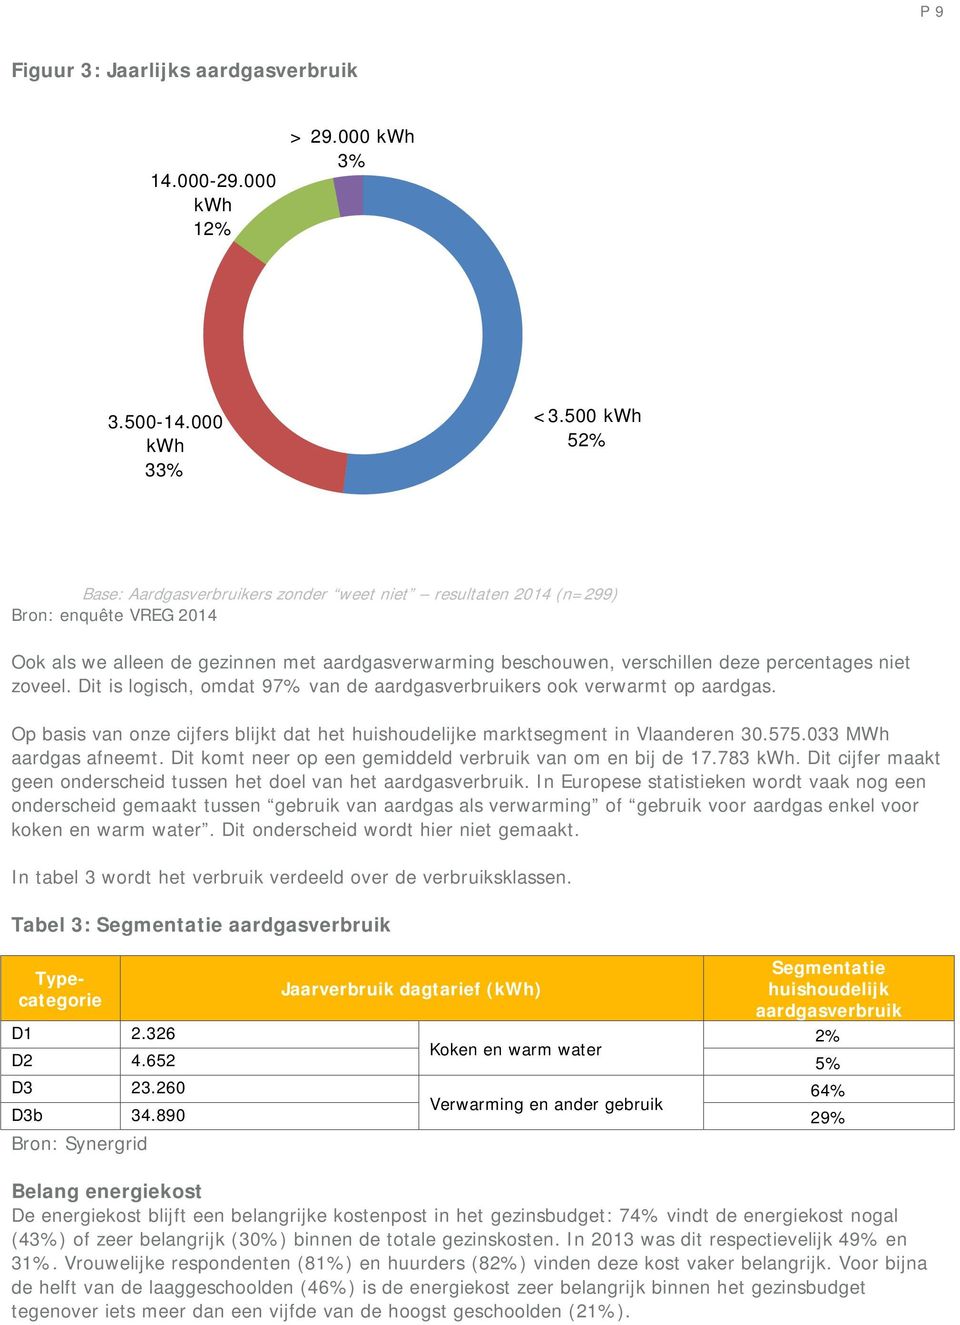 zoveel. Dit is logisch, omdat 97% van de aardgasverbruikers ook verwarmt op aardgas. Op basis van onze cijfers blijkt dat het huishoudelijke marktsegment in Vlaanderen 30.575.033 MWh aardgas afneemt.